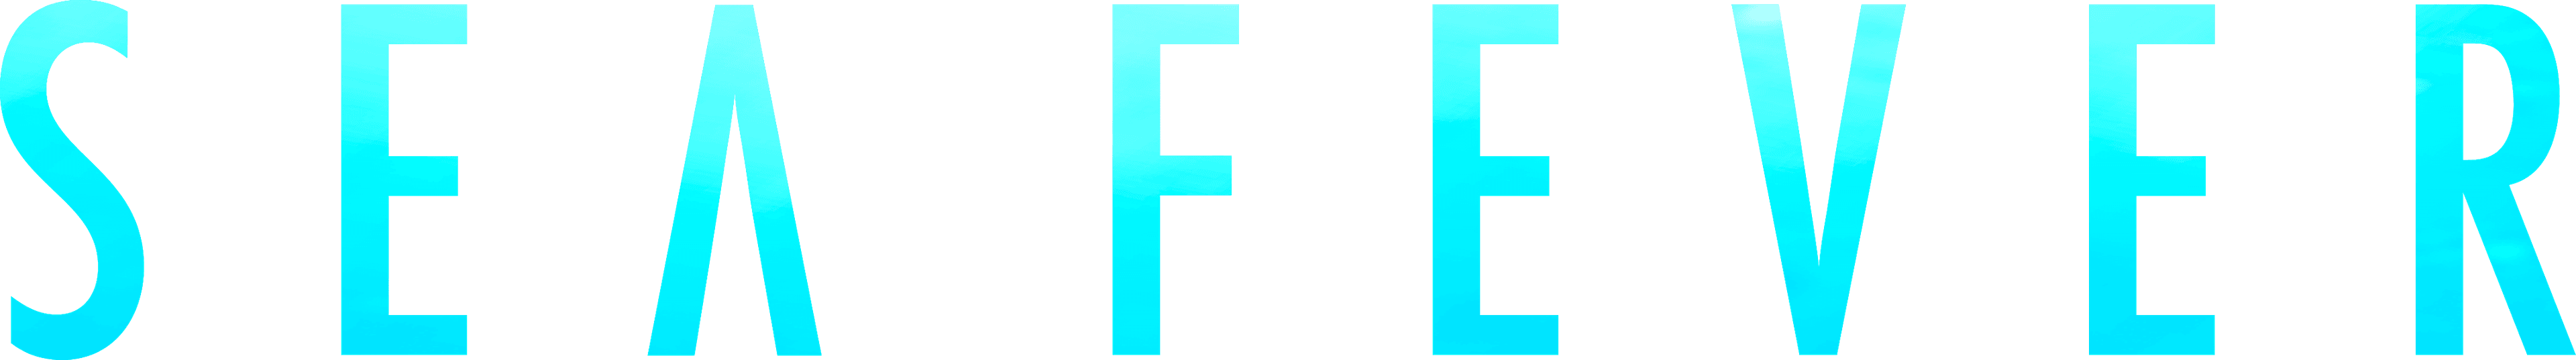 Sea Fever logo